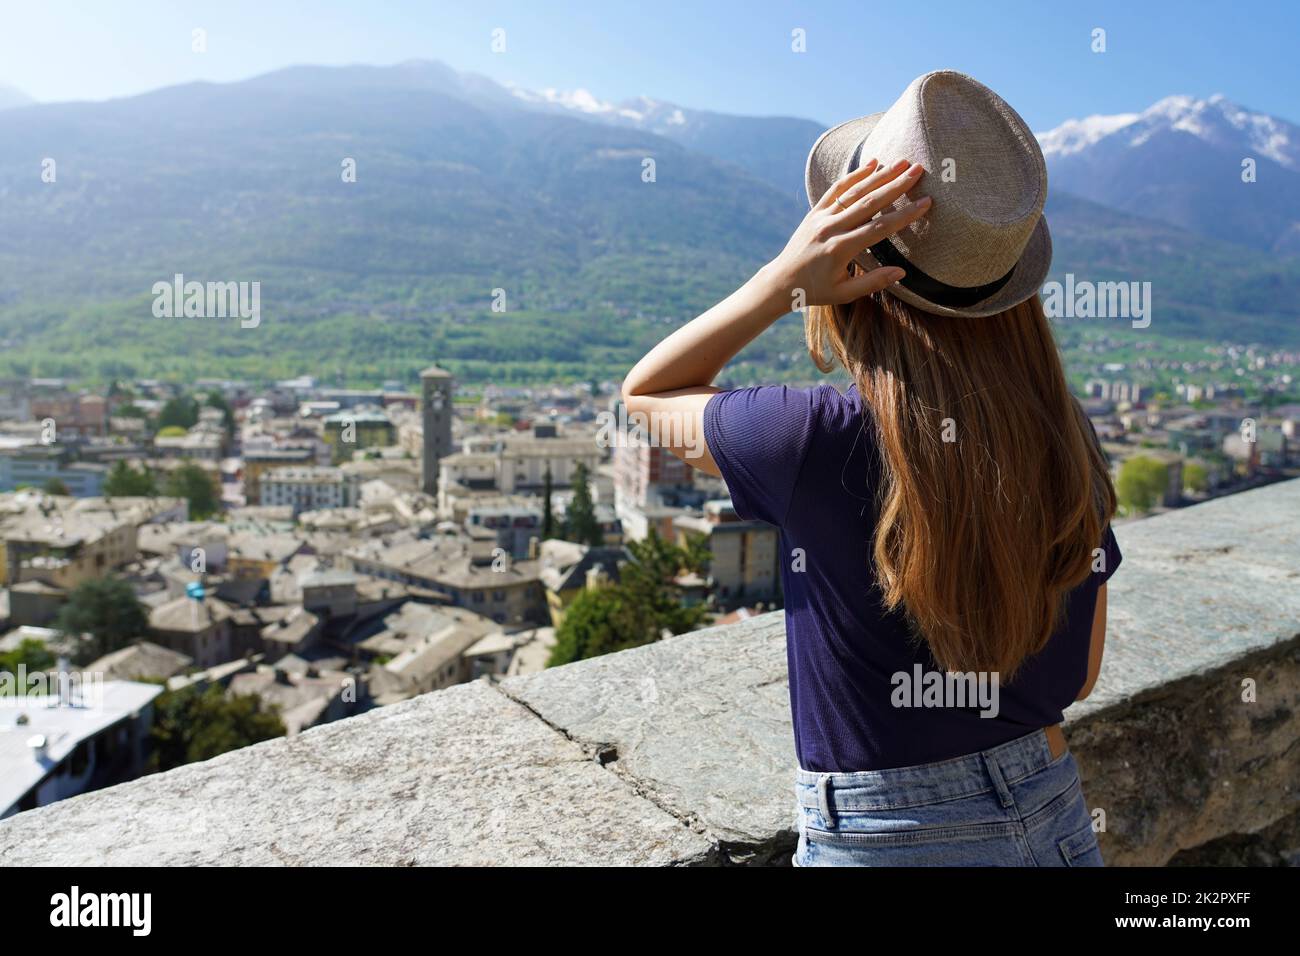 Belle fille jouissant d'une vue panoramique sur la vieille ville de Sondrio, Valtellina, Italie Banque D'Images